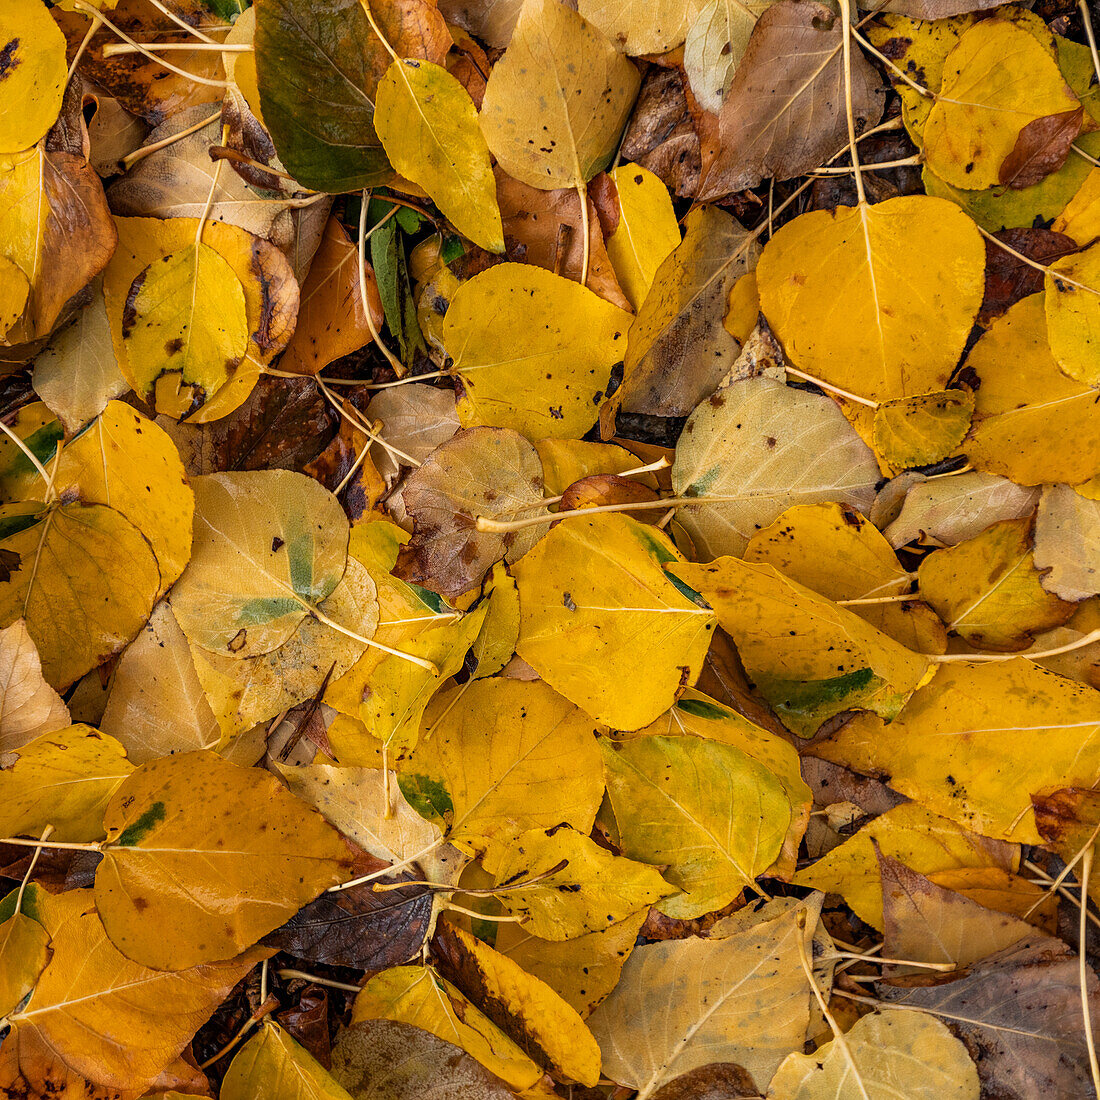 Nahaufnahme der gelben Blätter im Herbst